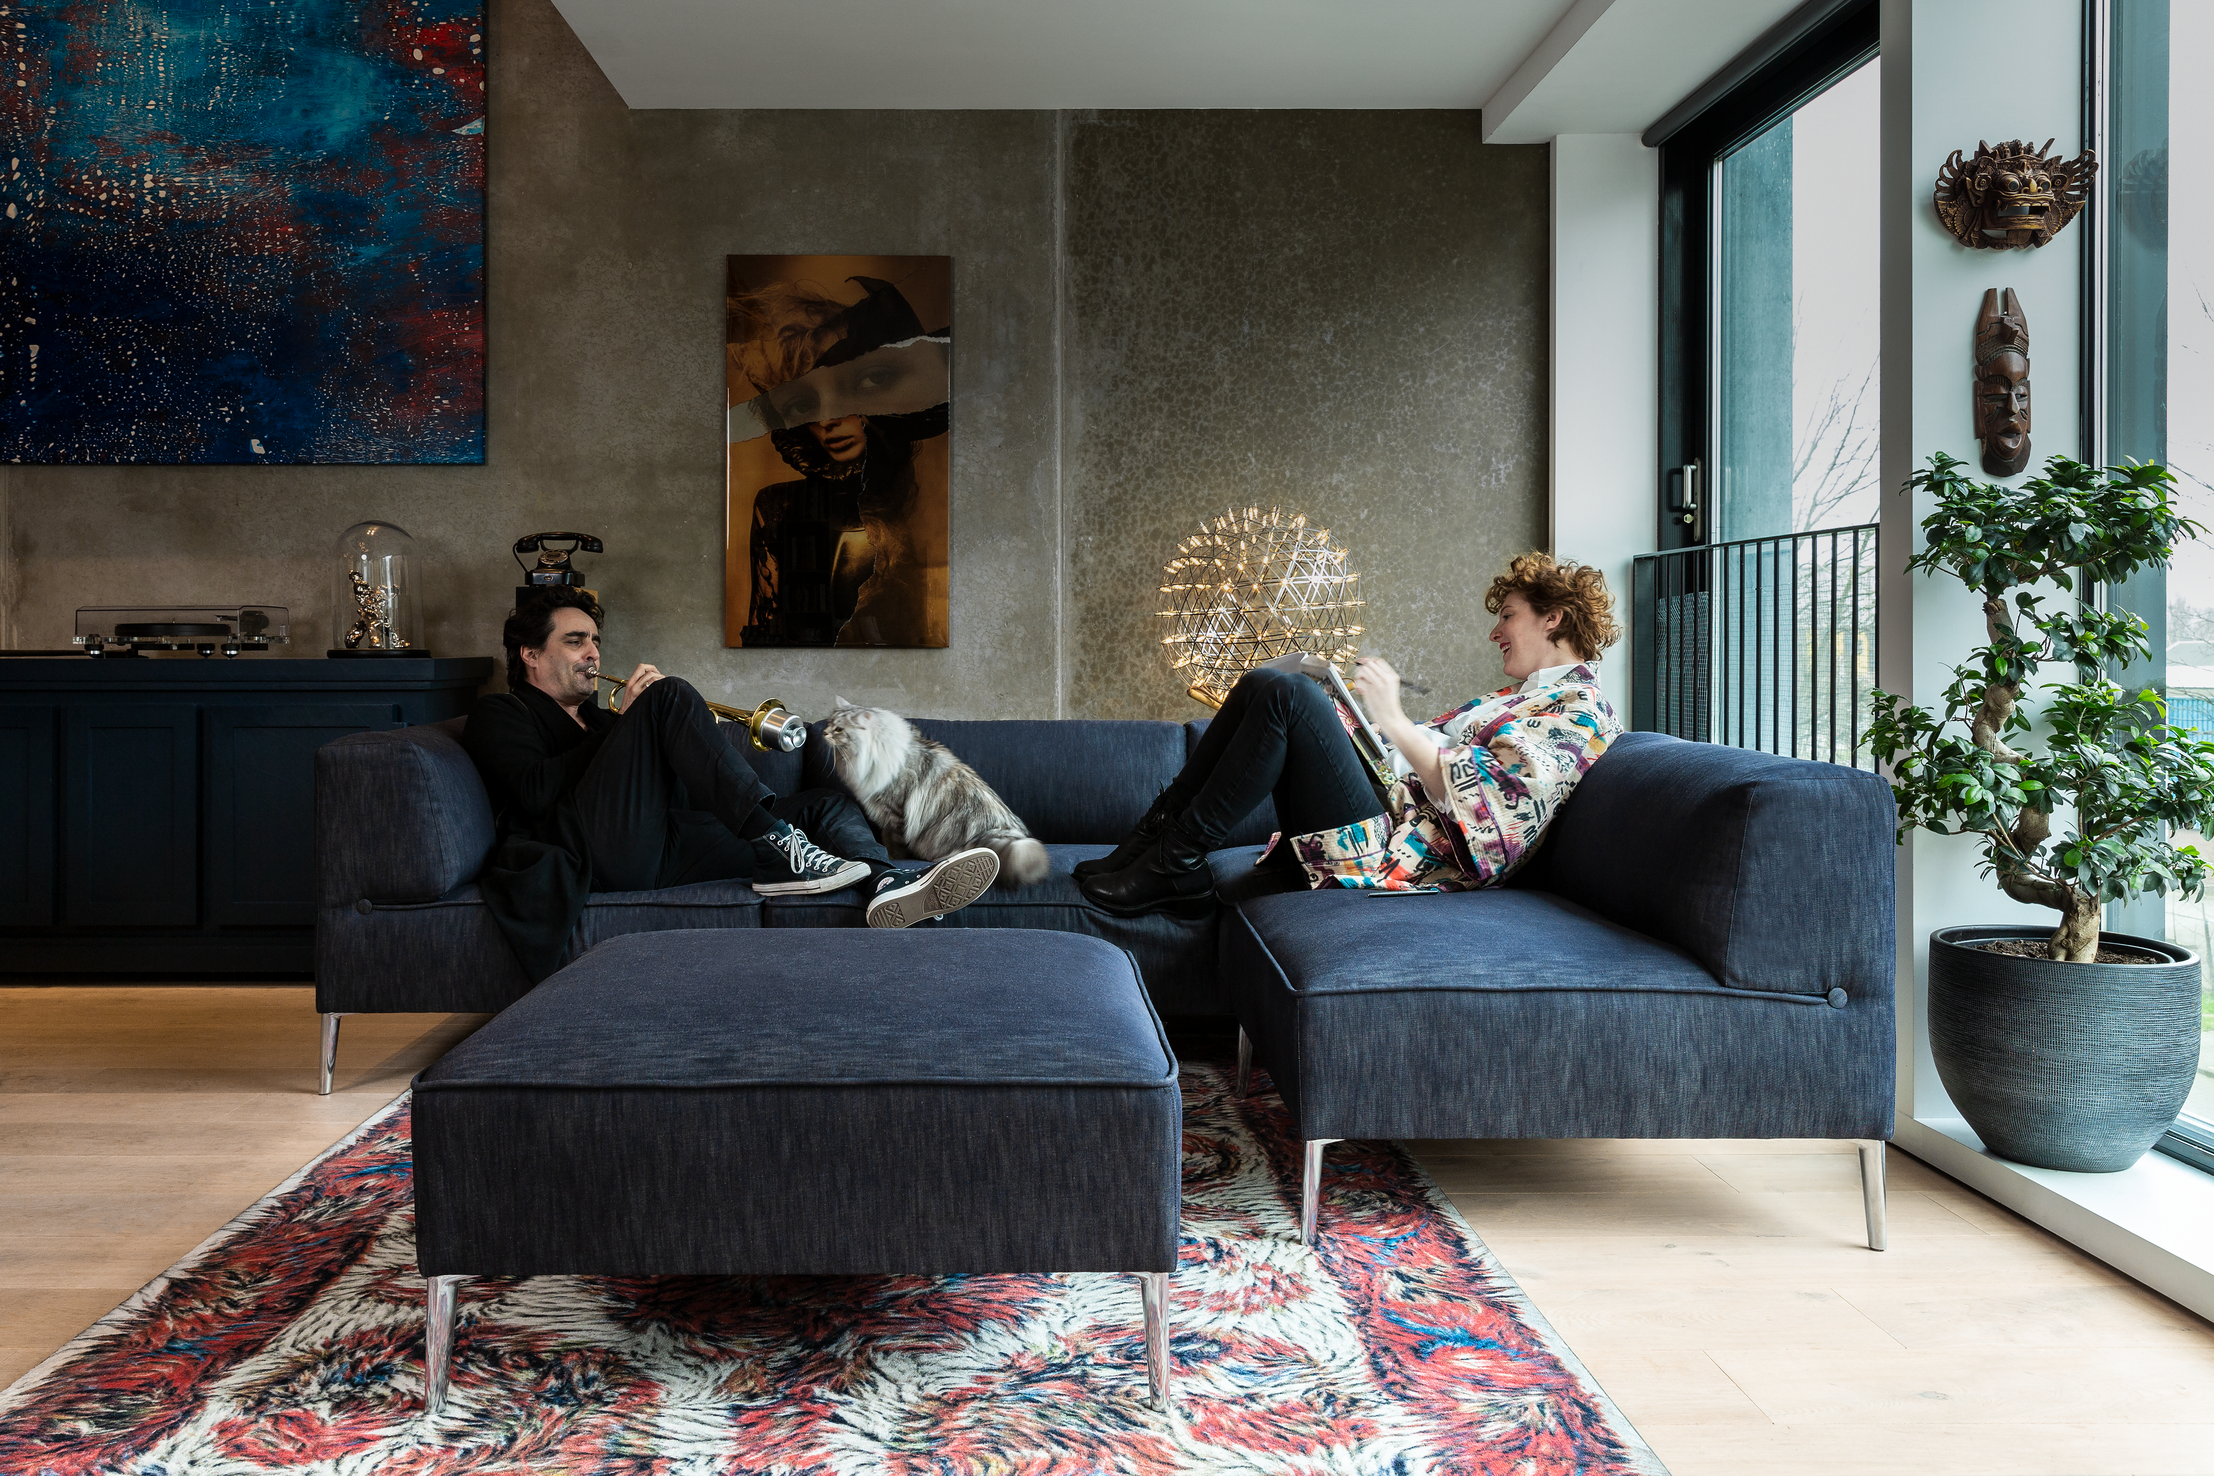 Sofa So Good in residential building denim